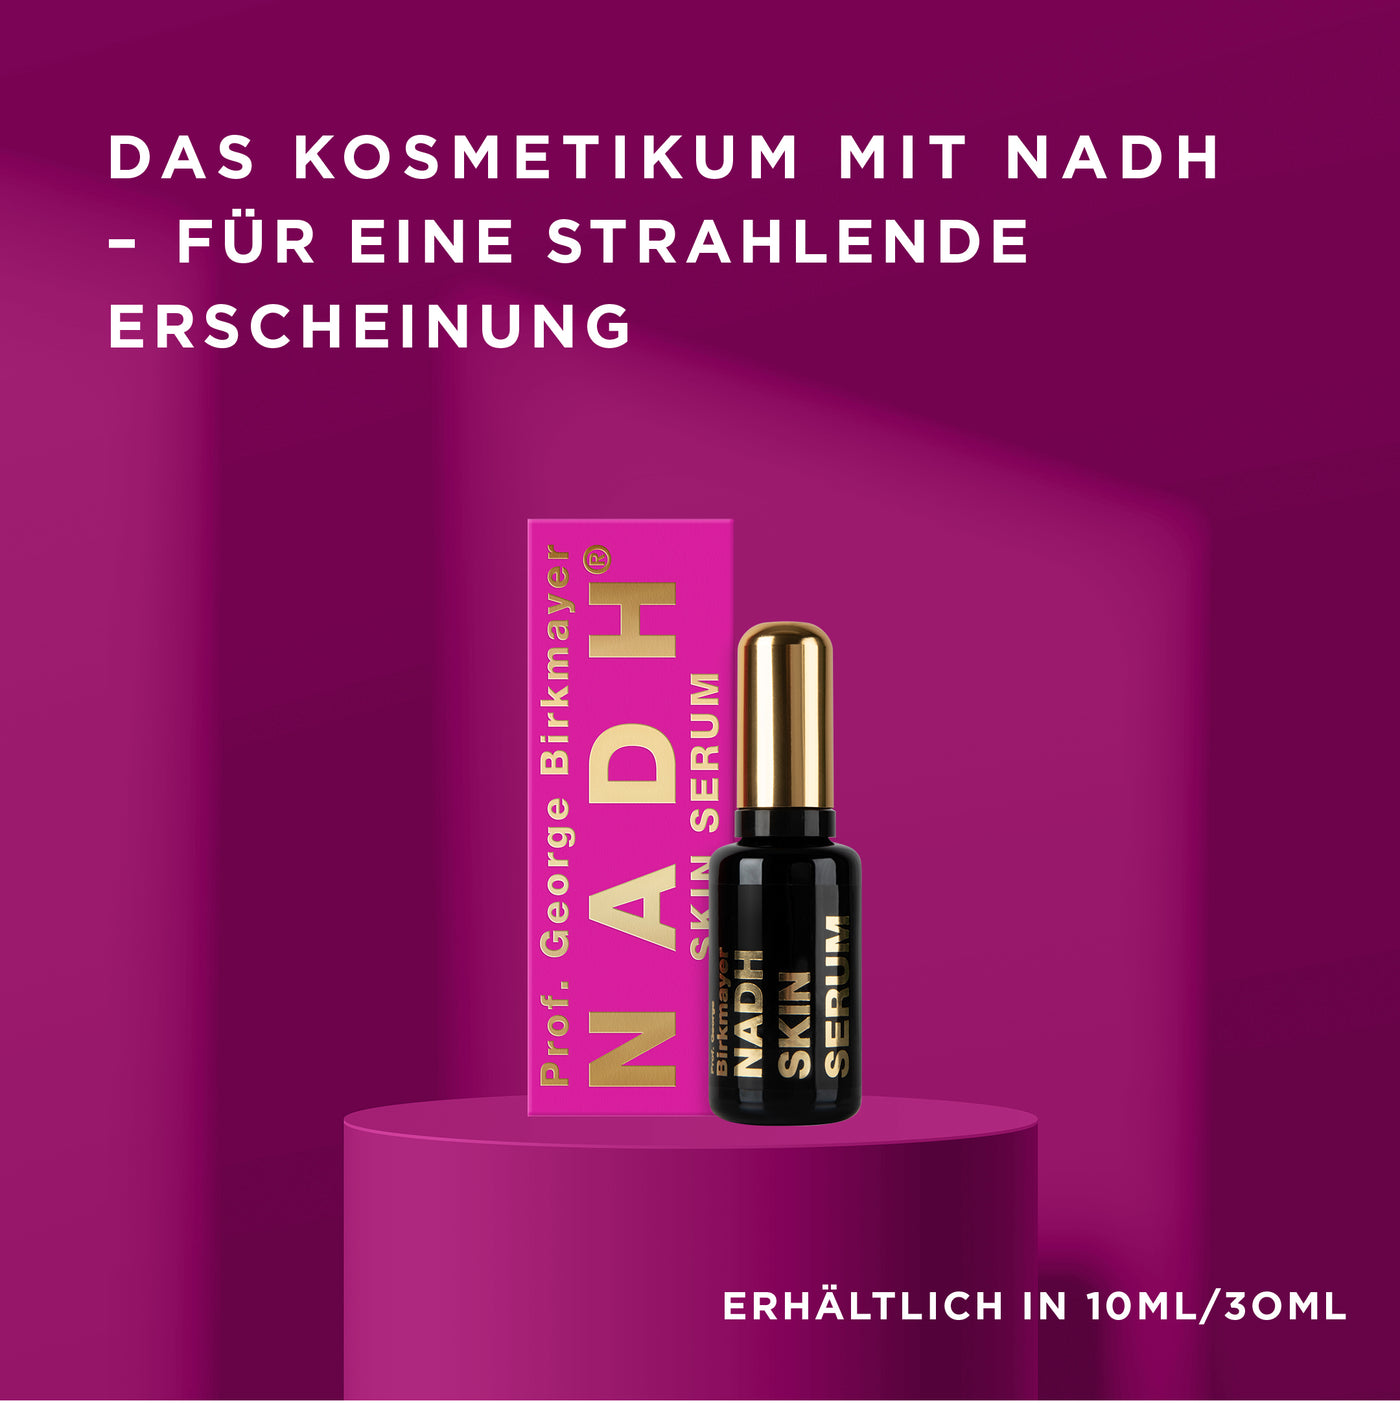 NADH Verpackung und Flasche Skin Serum auf violettem podest mit Text "Das Kosmetikum mit NADH - für strahlende Erscheinung"